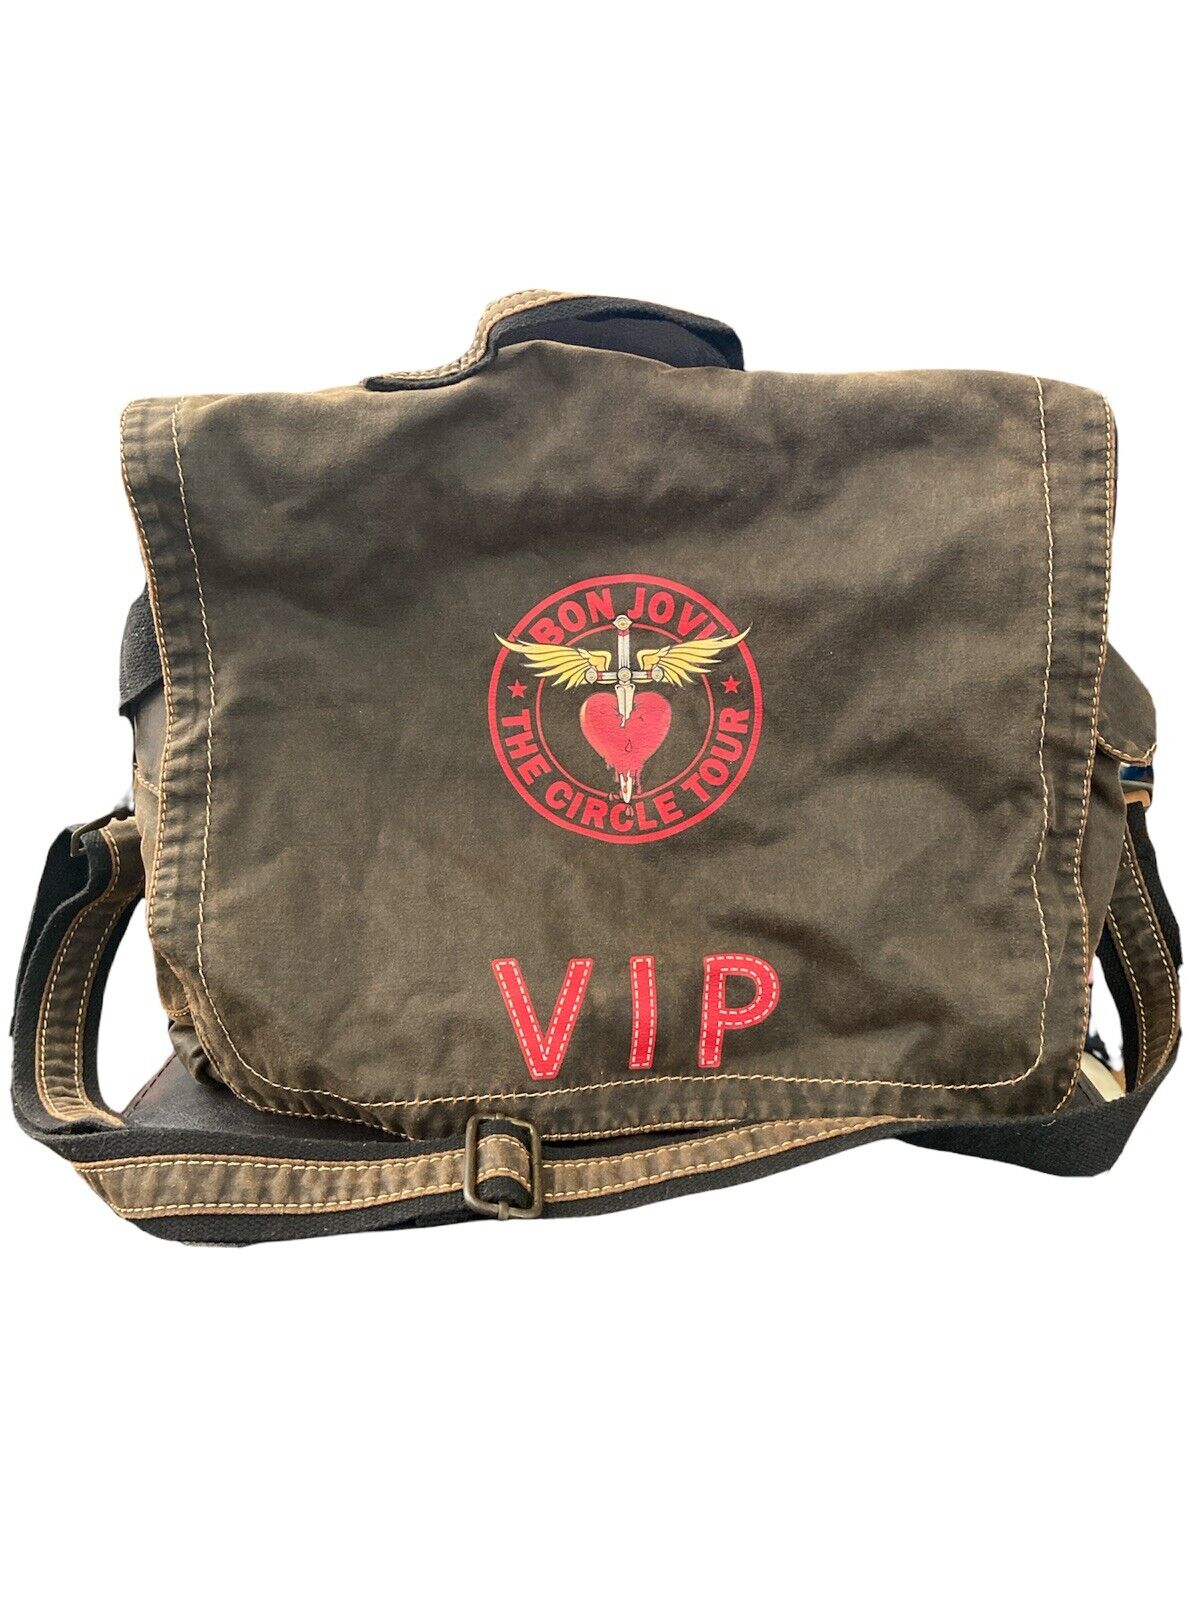 Bon Jovi The Circle Tour VIP Messenger Bag